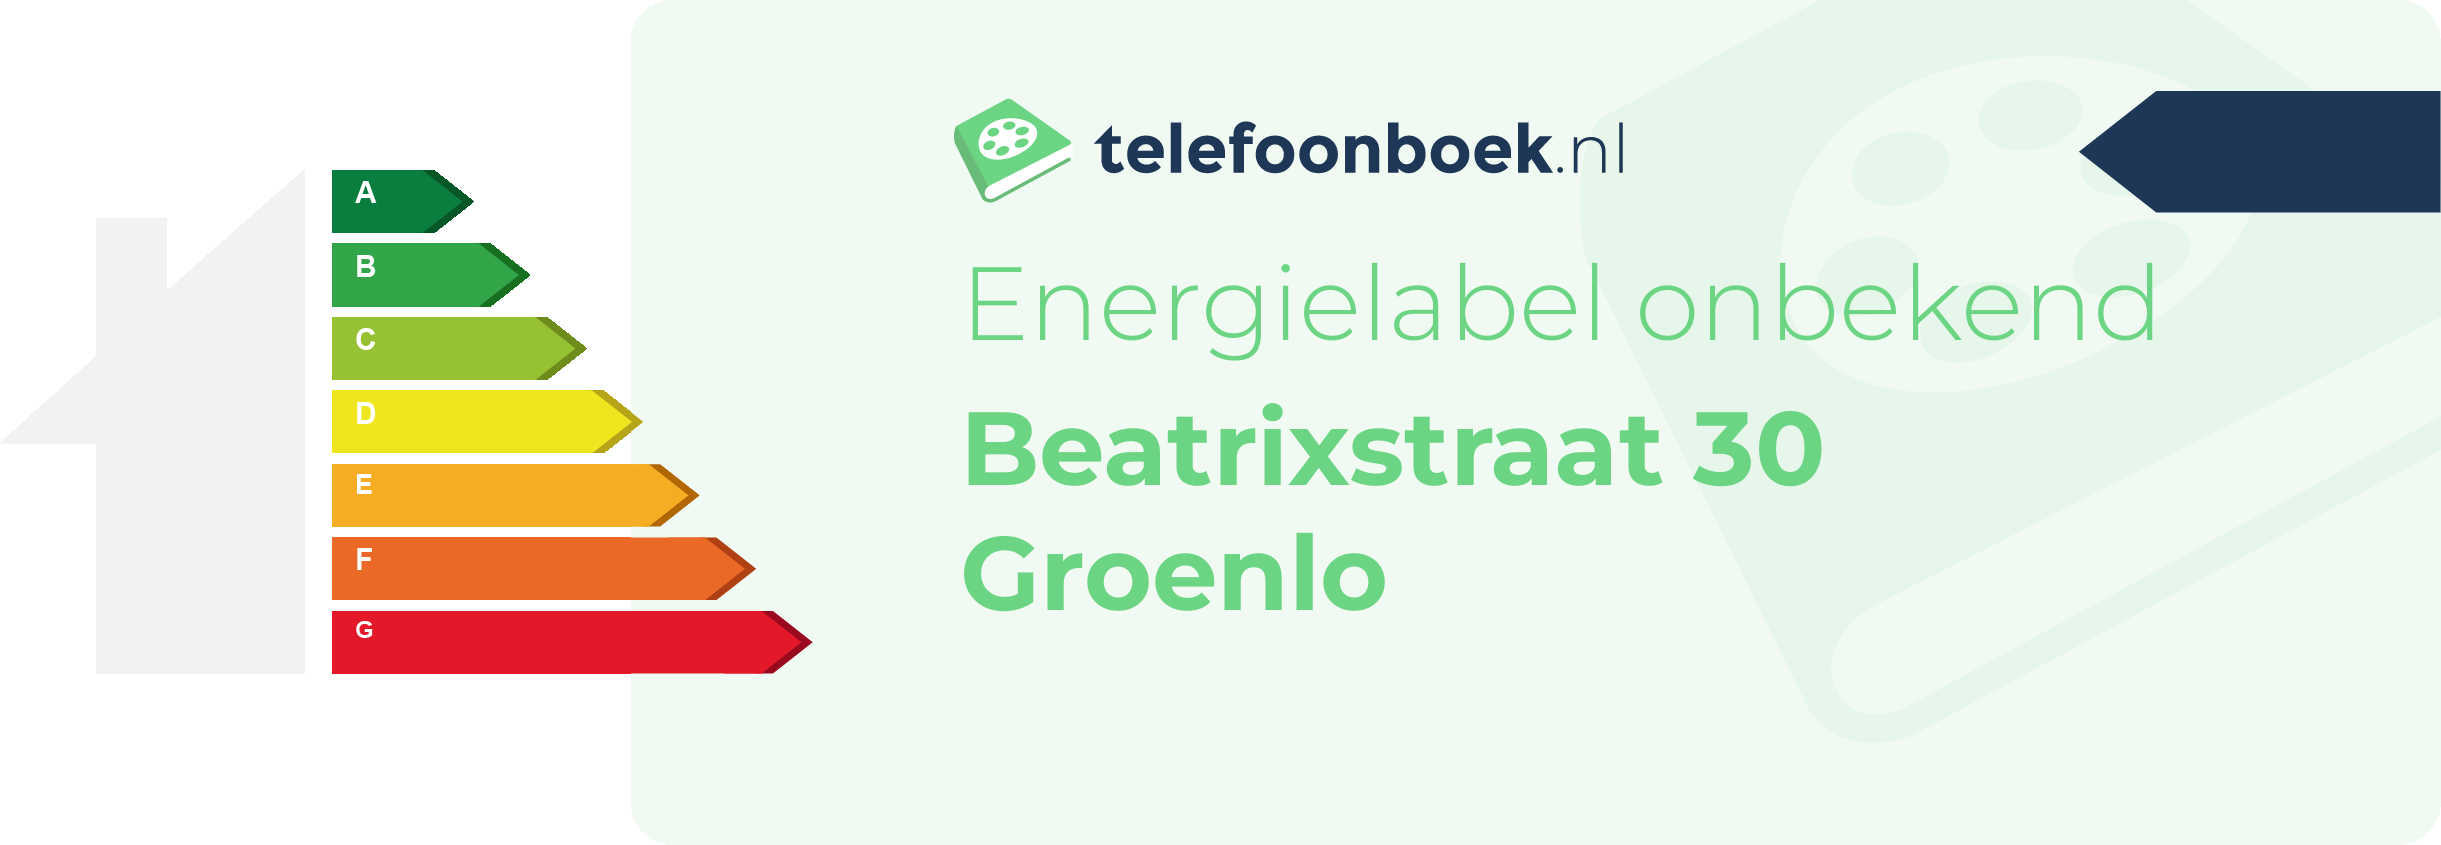 Energielabel Beatrixstraat 30 Groenlo